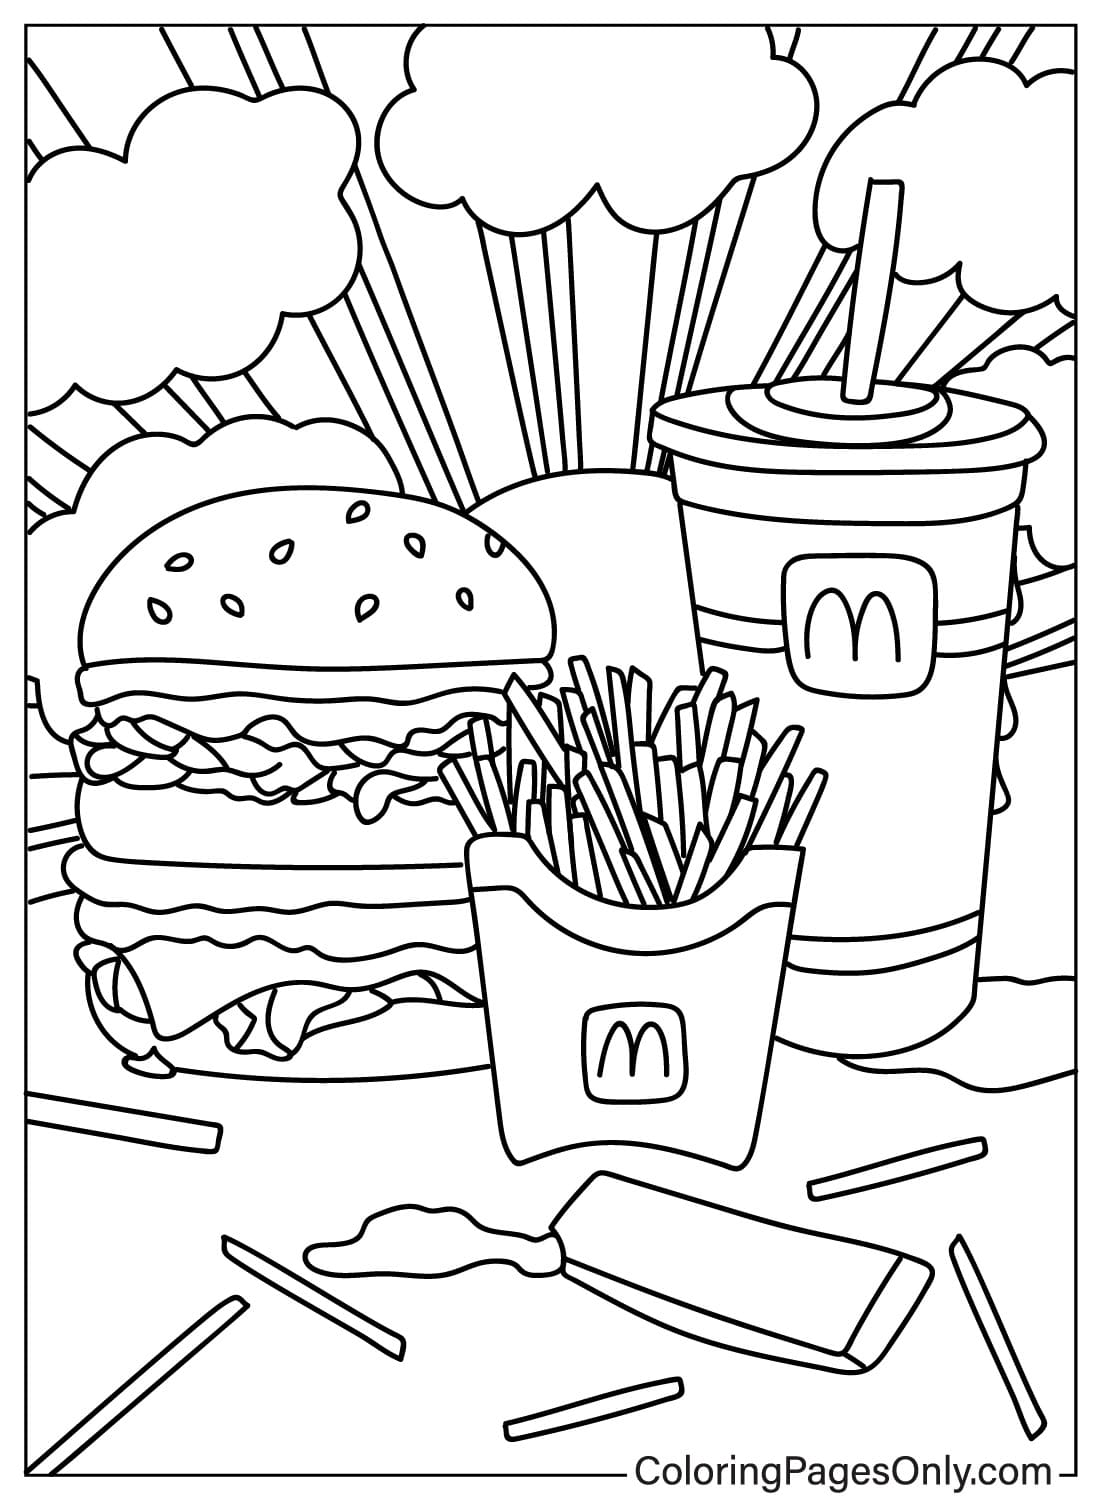 Folha de colorir do McDonalds para crianças do McDonald's